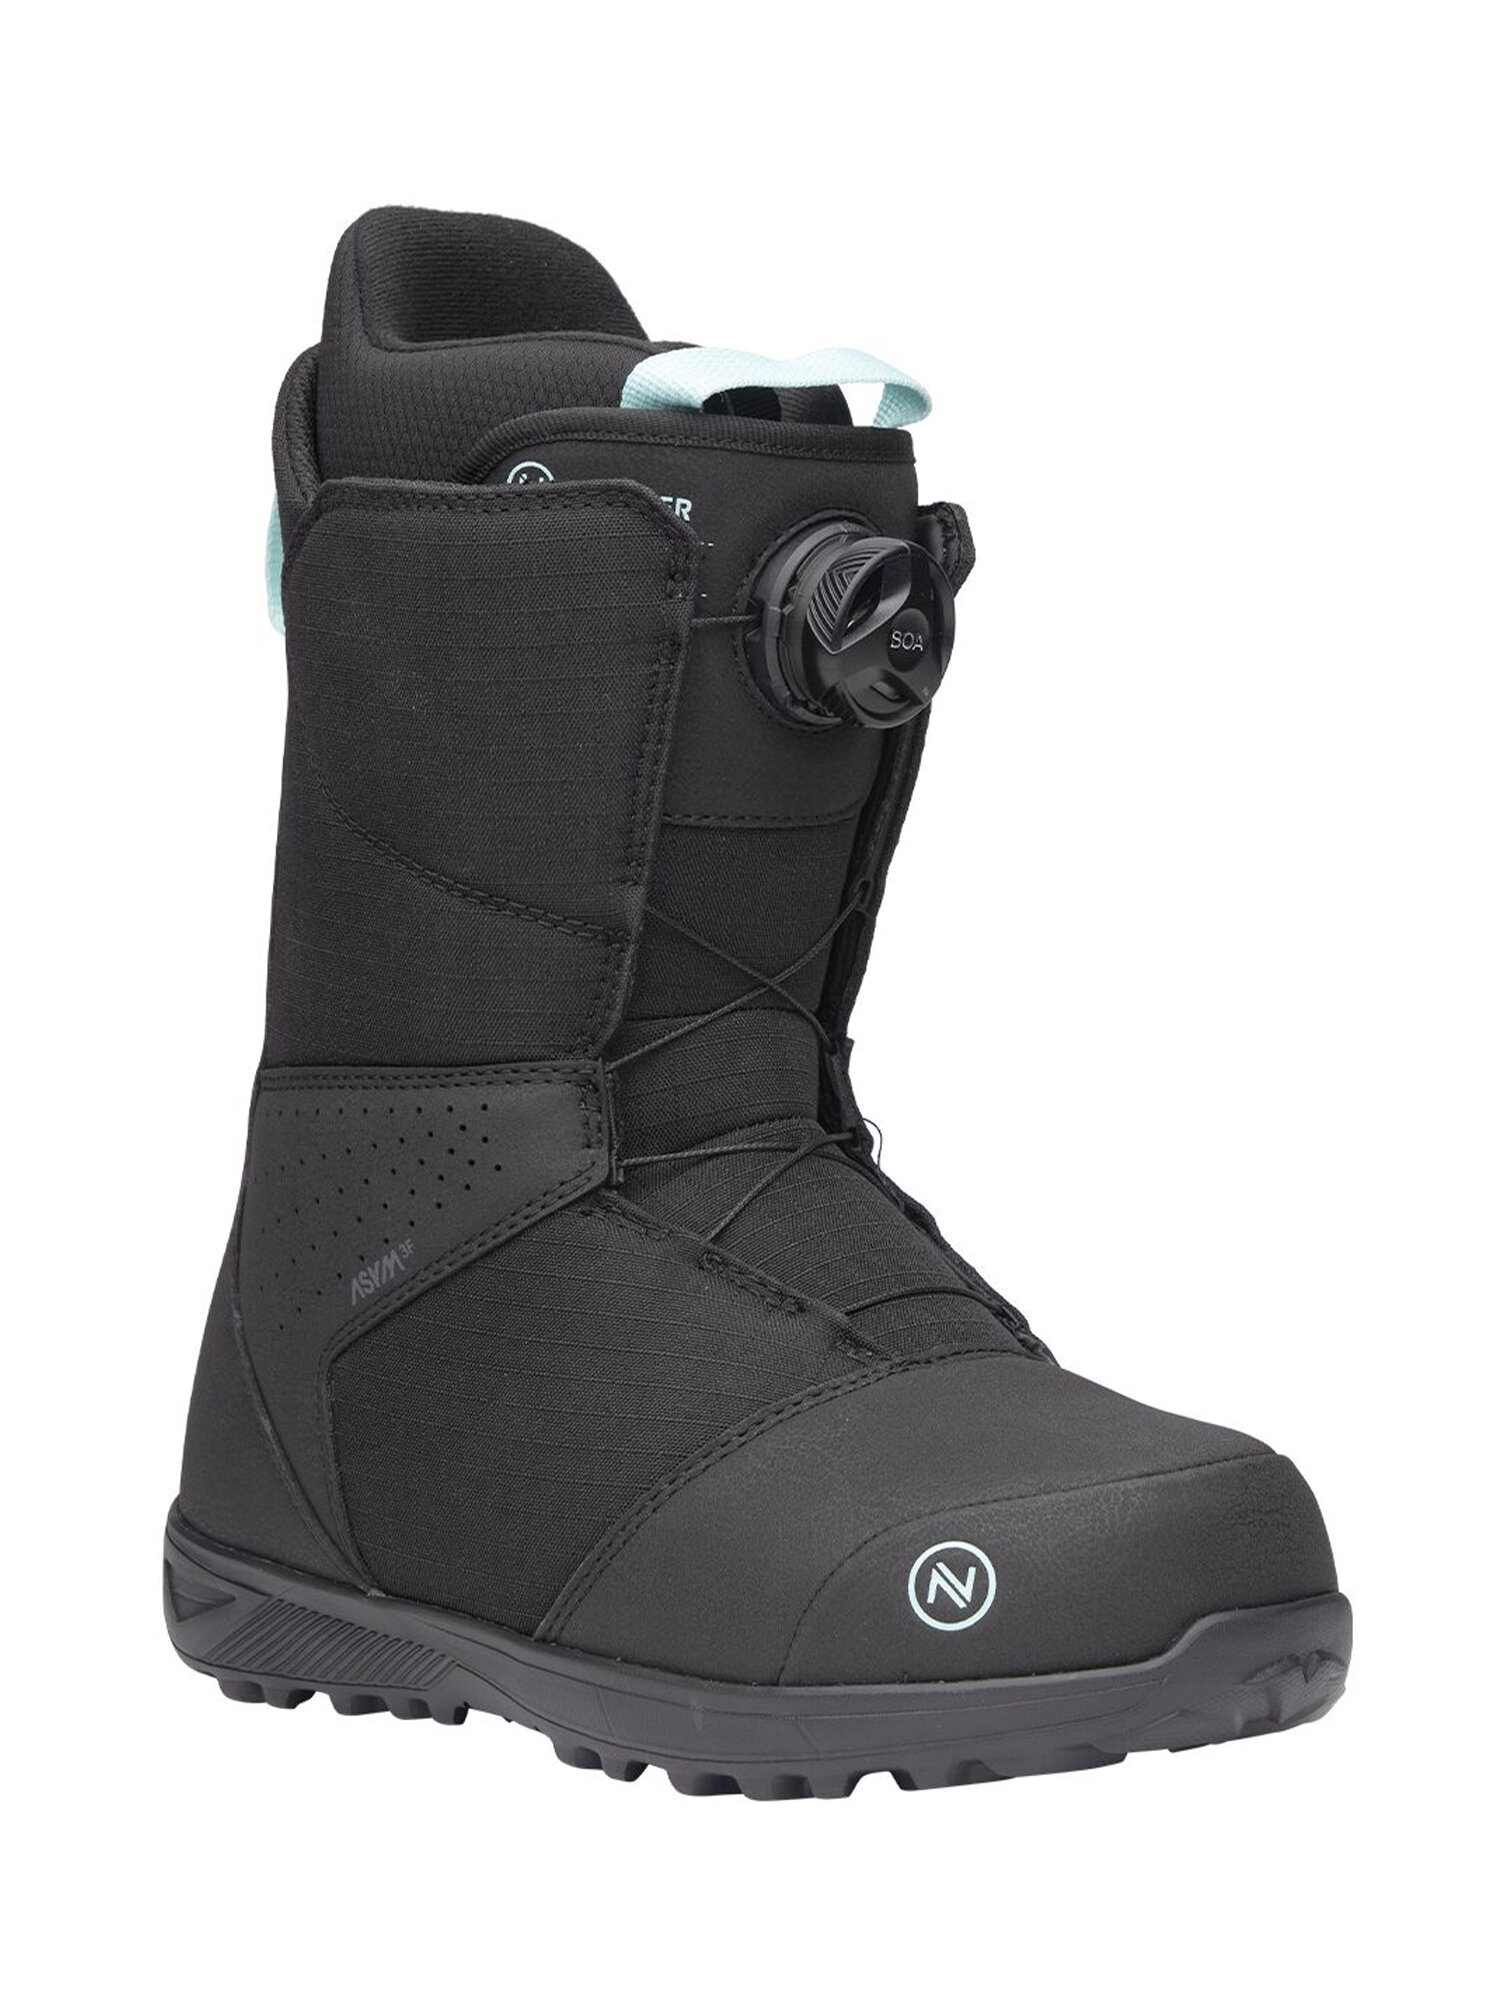 Ботинки для сноуборда NIDECKER Sierra W Black (US:7,5)